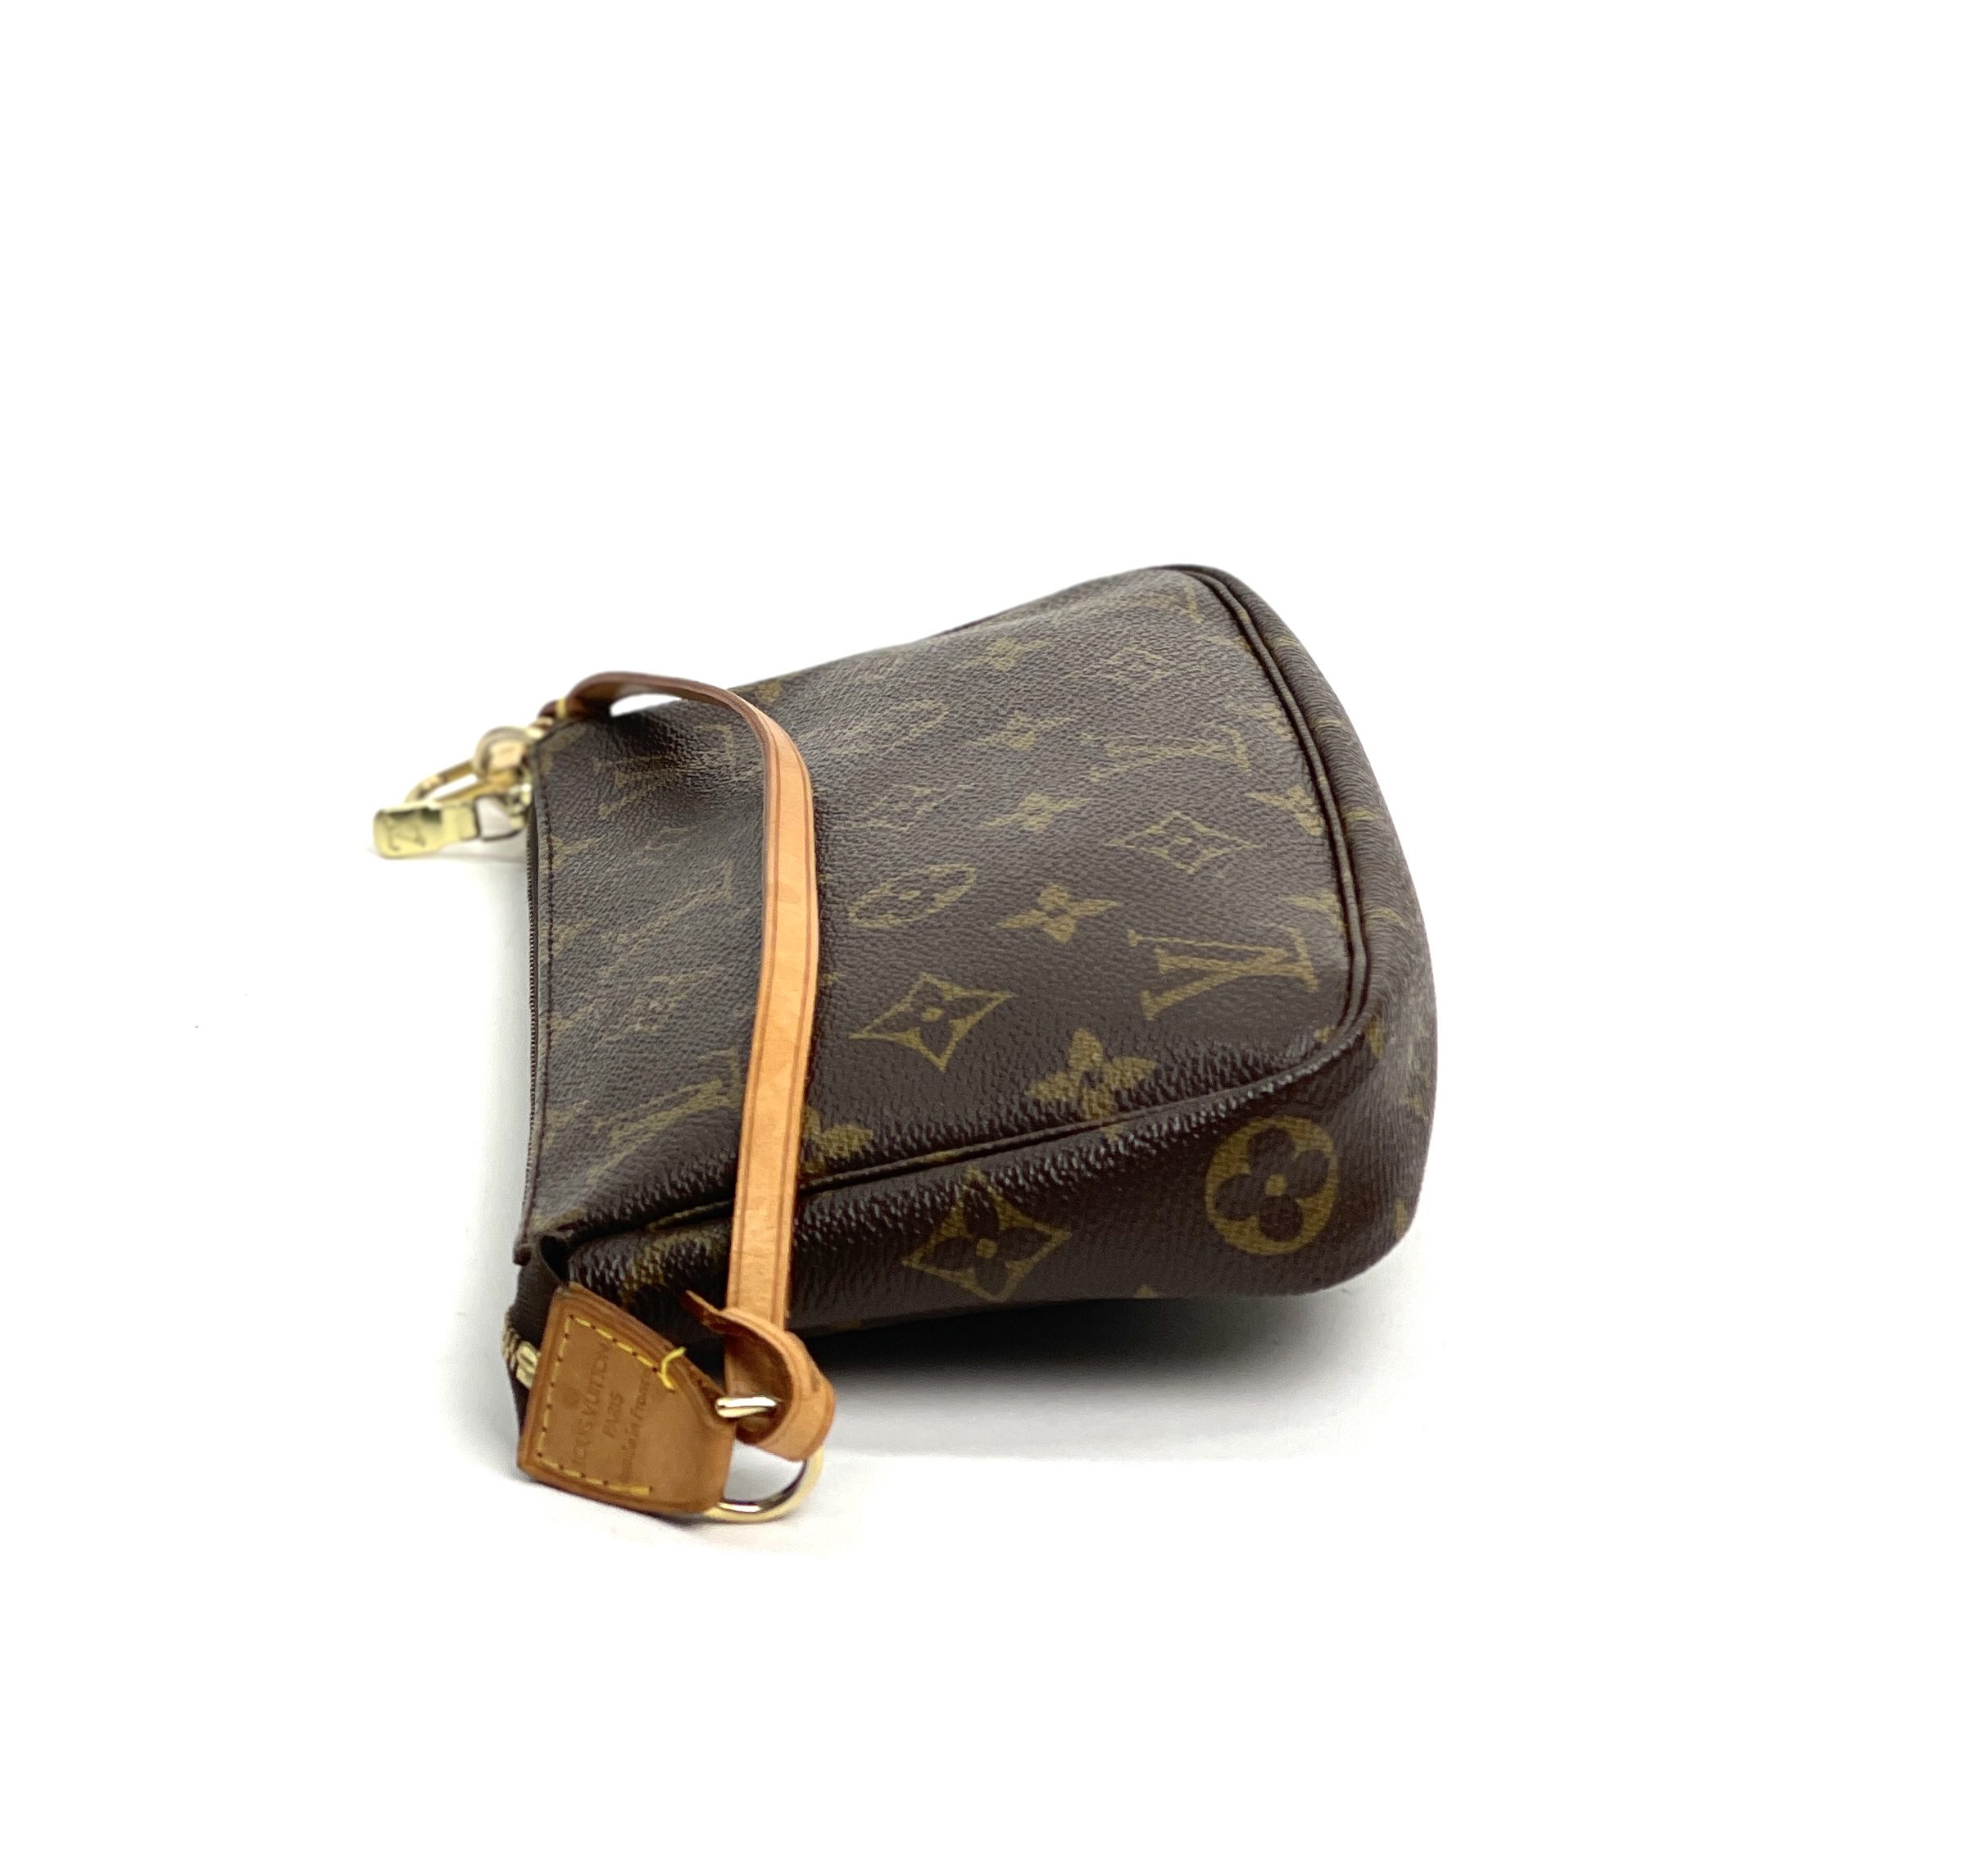 Louis Vuitton 2002 pre-owned Monogram Pochette Accessoires Handbag